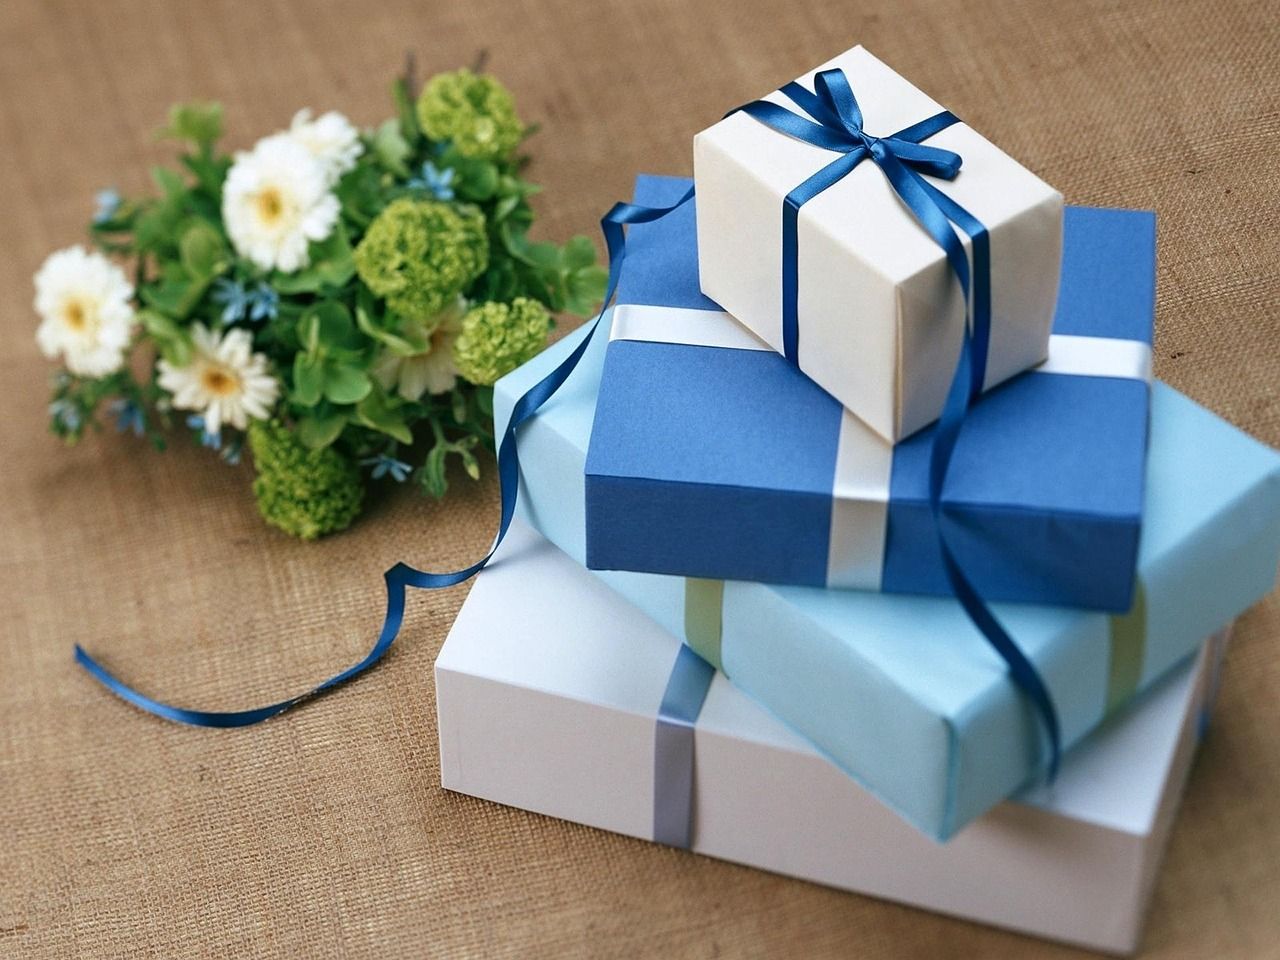 Jaki prezent możemy podarować wujowi na urodziny?